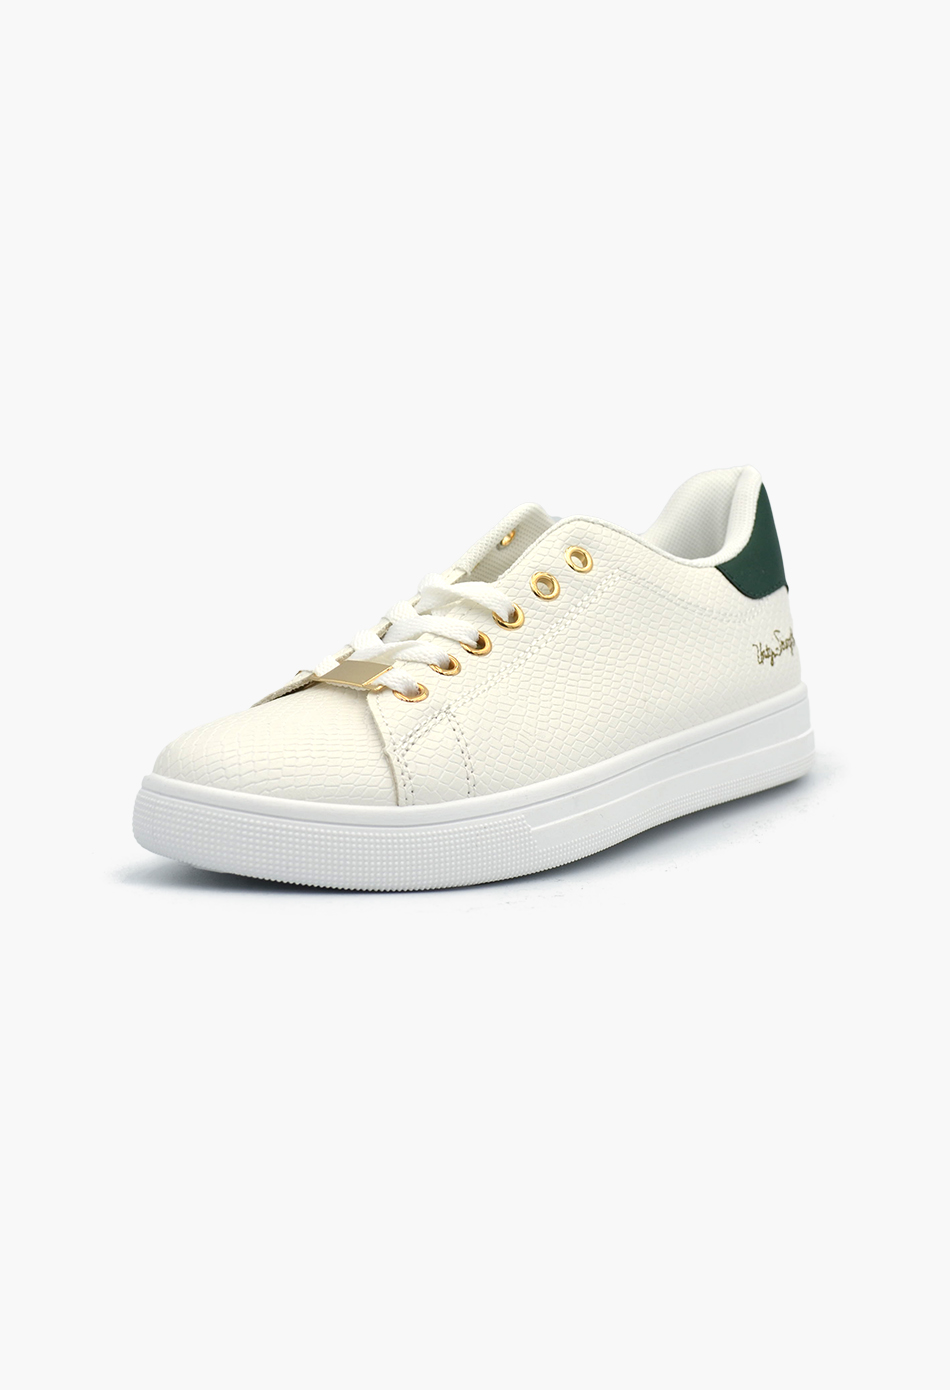 Γυναικεία Flatforms Sneakers Λευκό / OX2528-green Γυναικεία Αθλητικά και Sneakers joya.gr